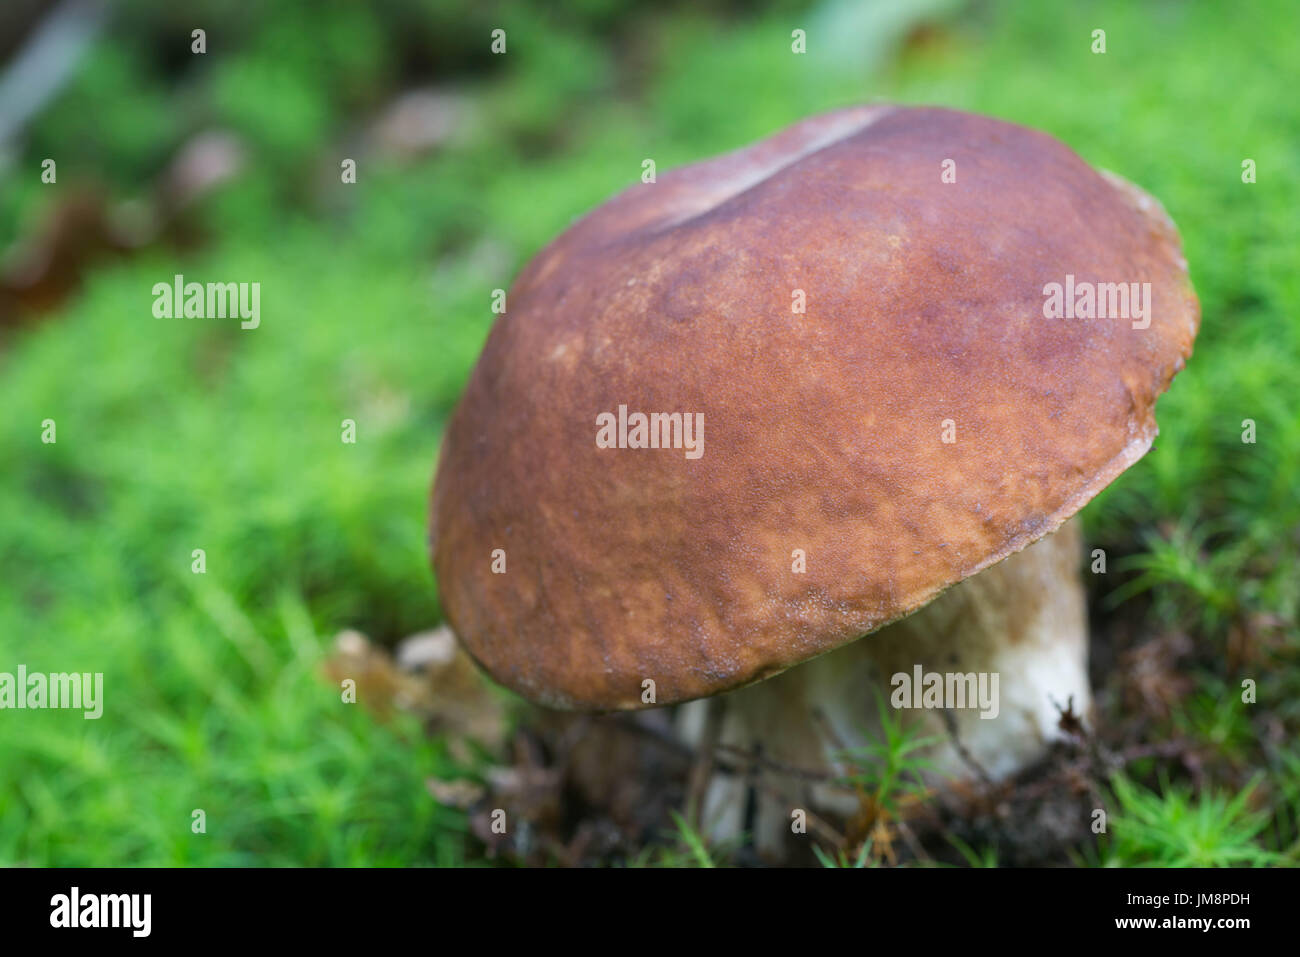 boletus mushroom in moss closeup selective focus Stock Photo